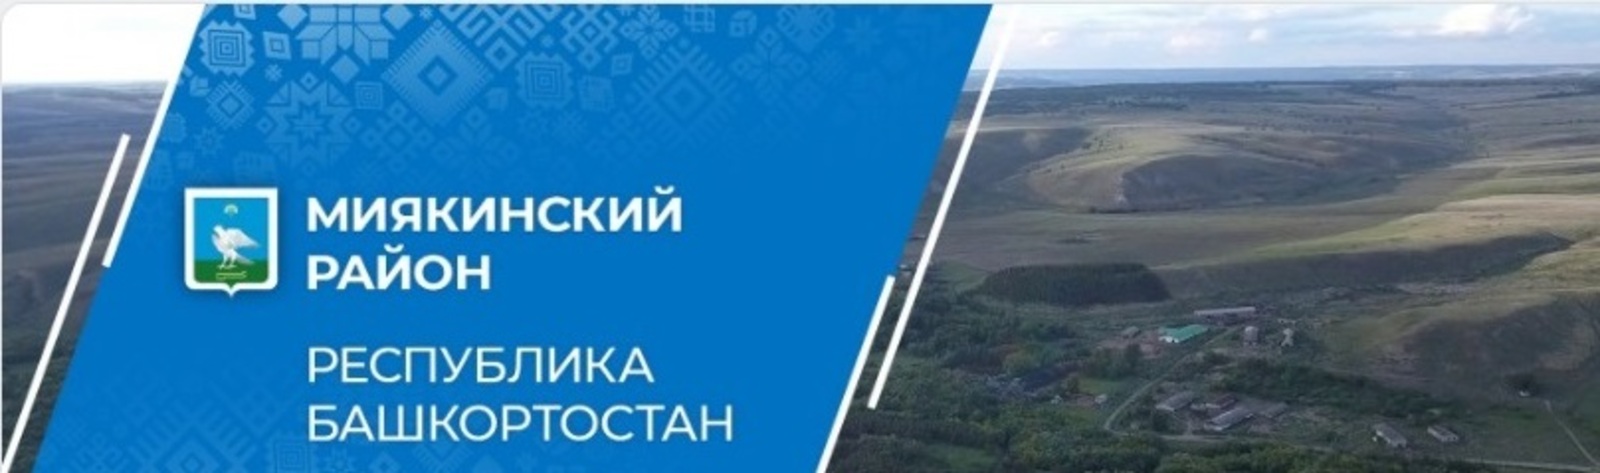 «Госпаблики ВКонтакте» Миякинского района